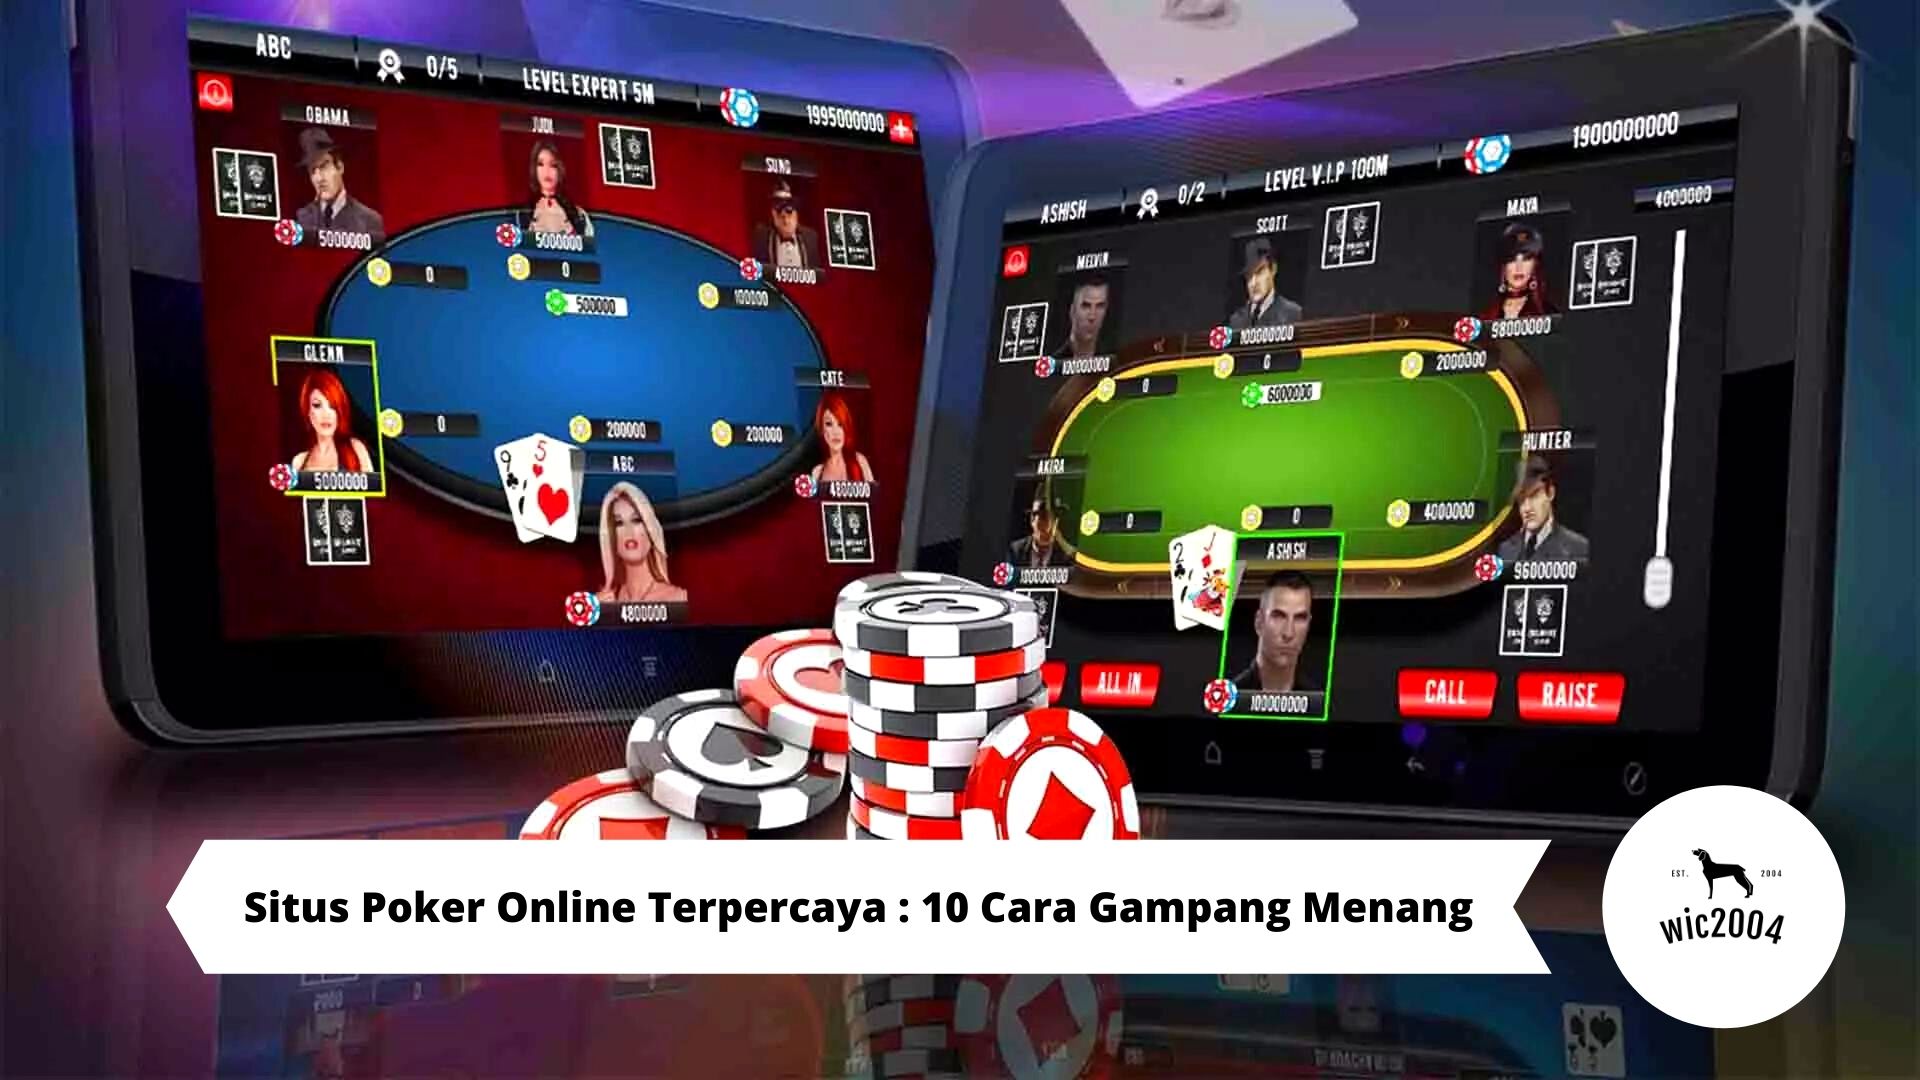 Situs Poker Online Terpercaya : 10 Cara Gampang Menang